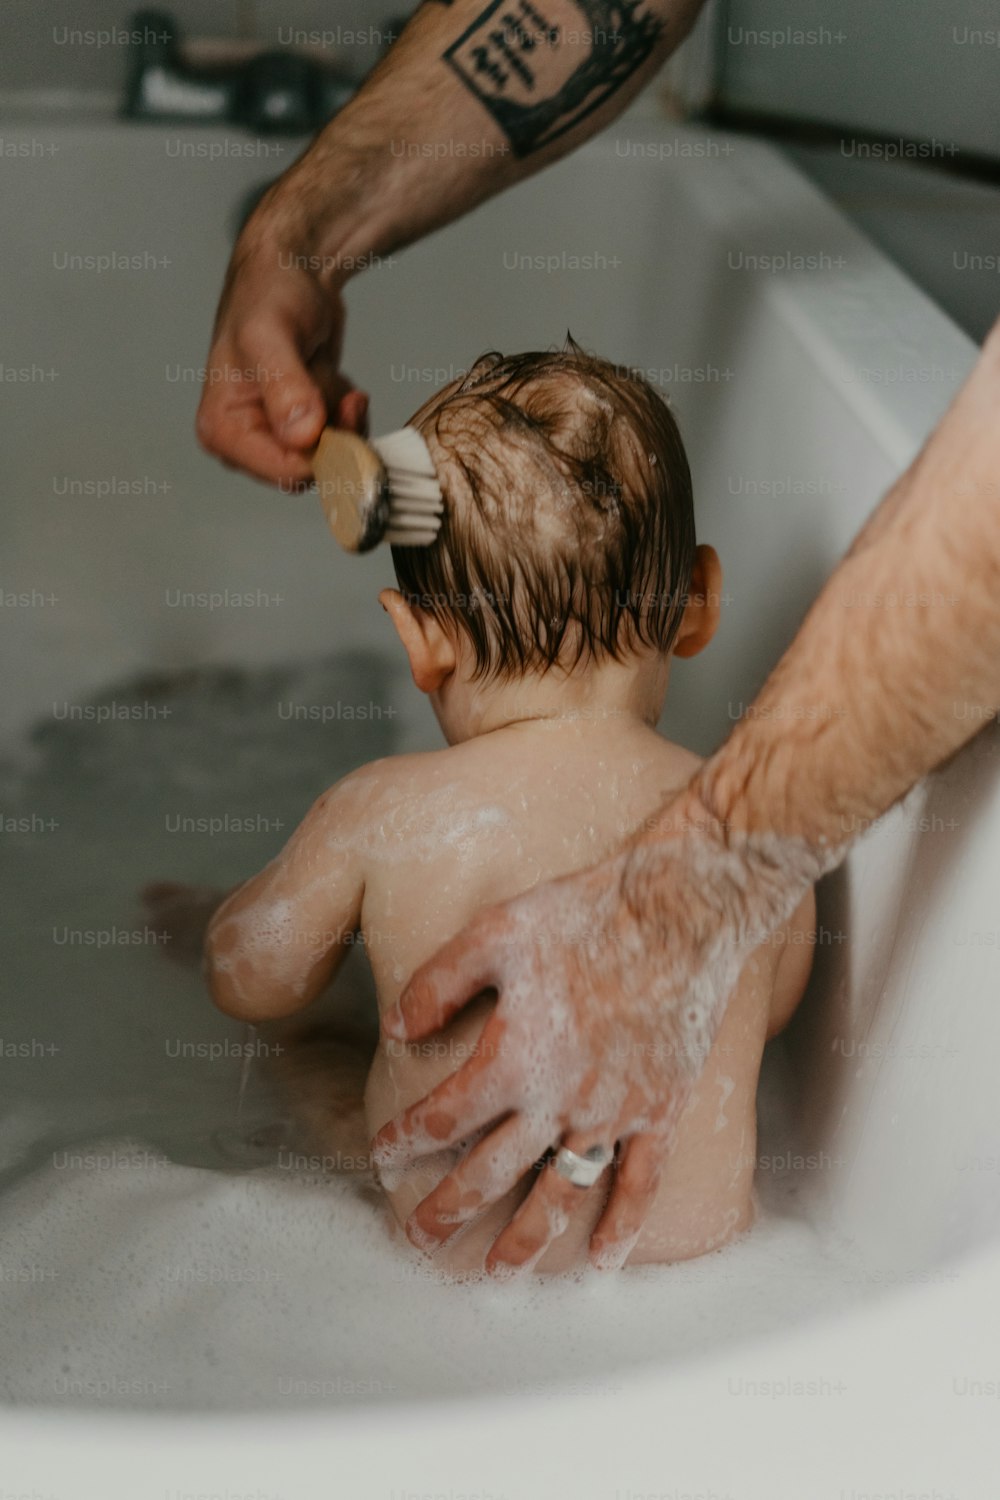 Un homme brossant les cheveux d’un enfant dans une baignoire